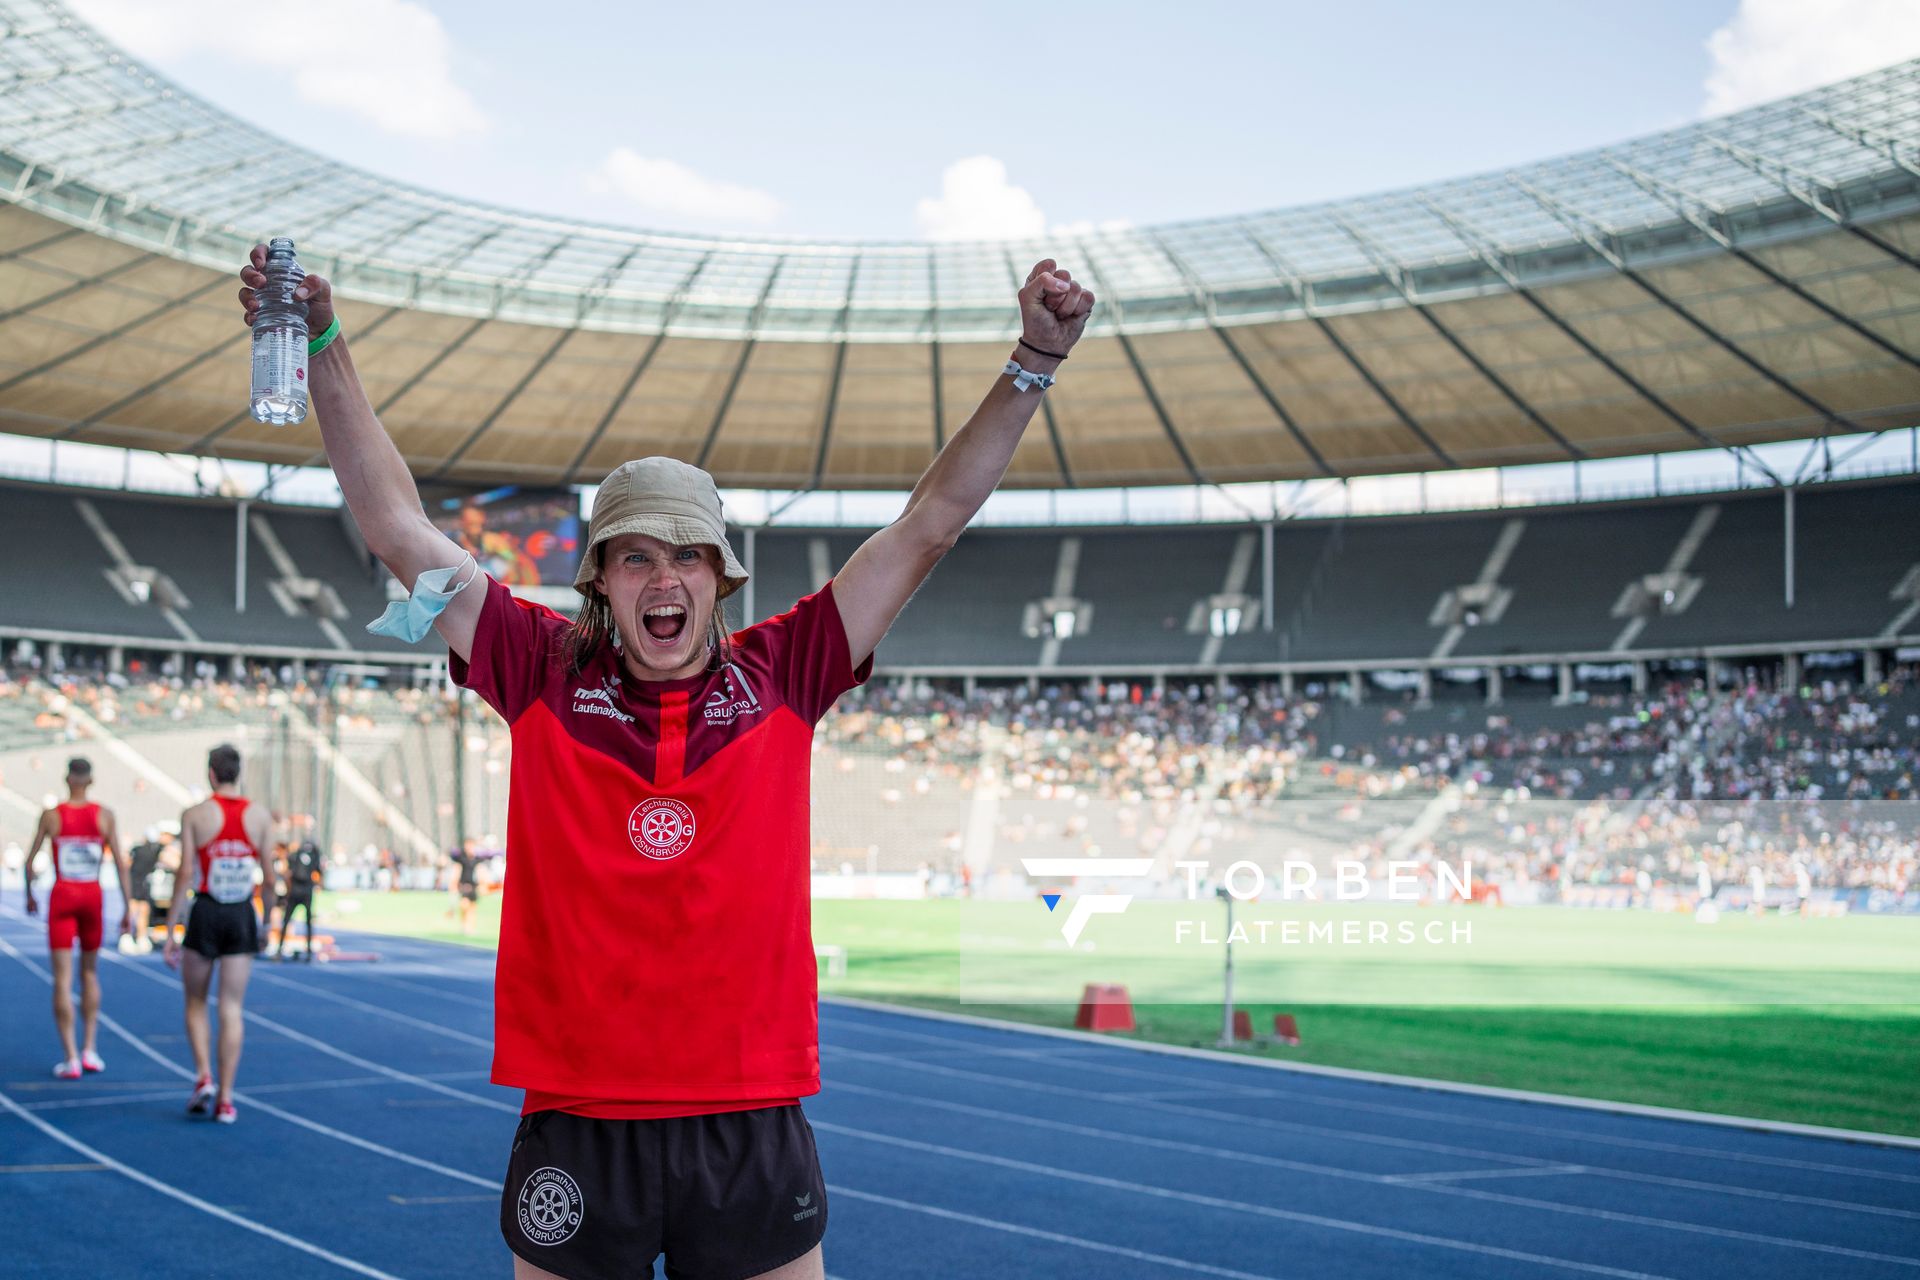 Nils Huhtakangas (LG Osnabrueck) waehrend der deutschen Leichtathletik-Meisterschaften im Olympiastadion am 26.06.2022 in Berlin